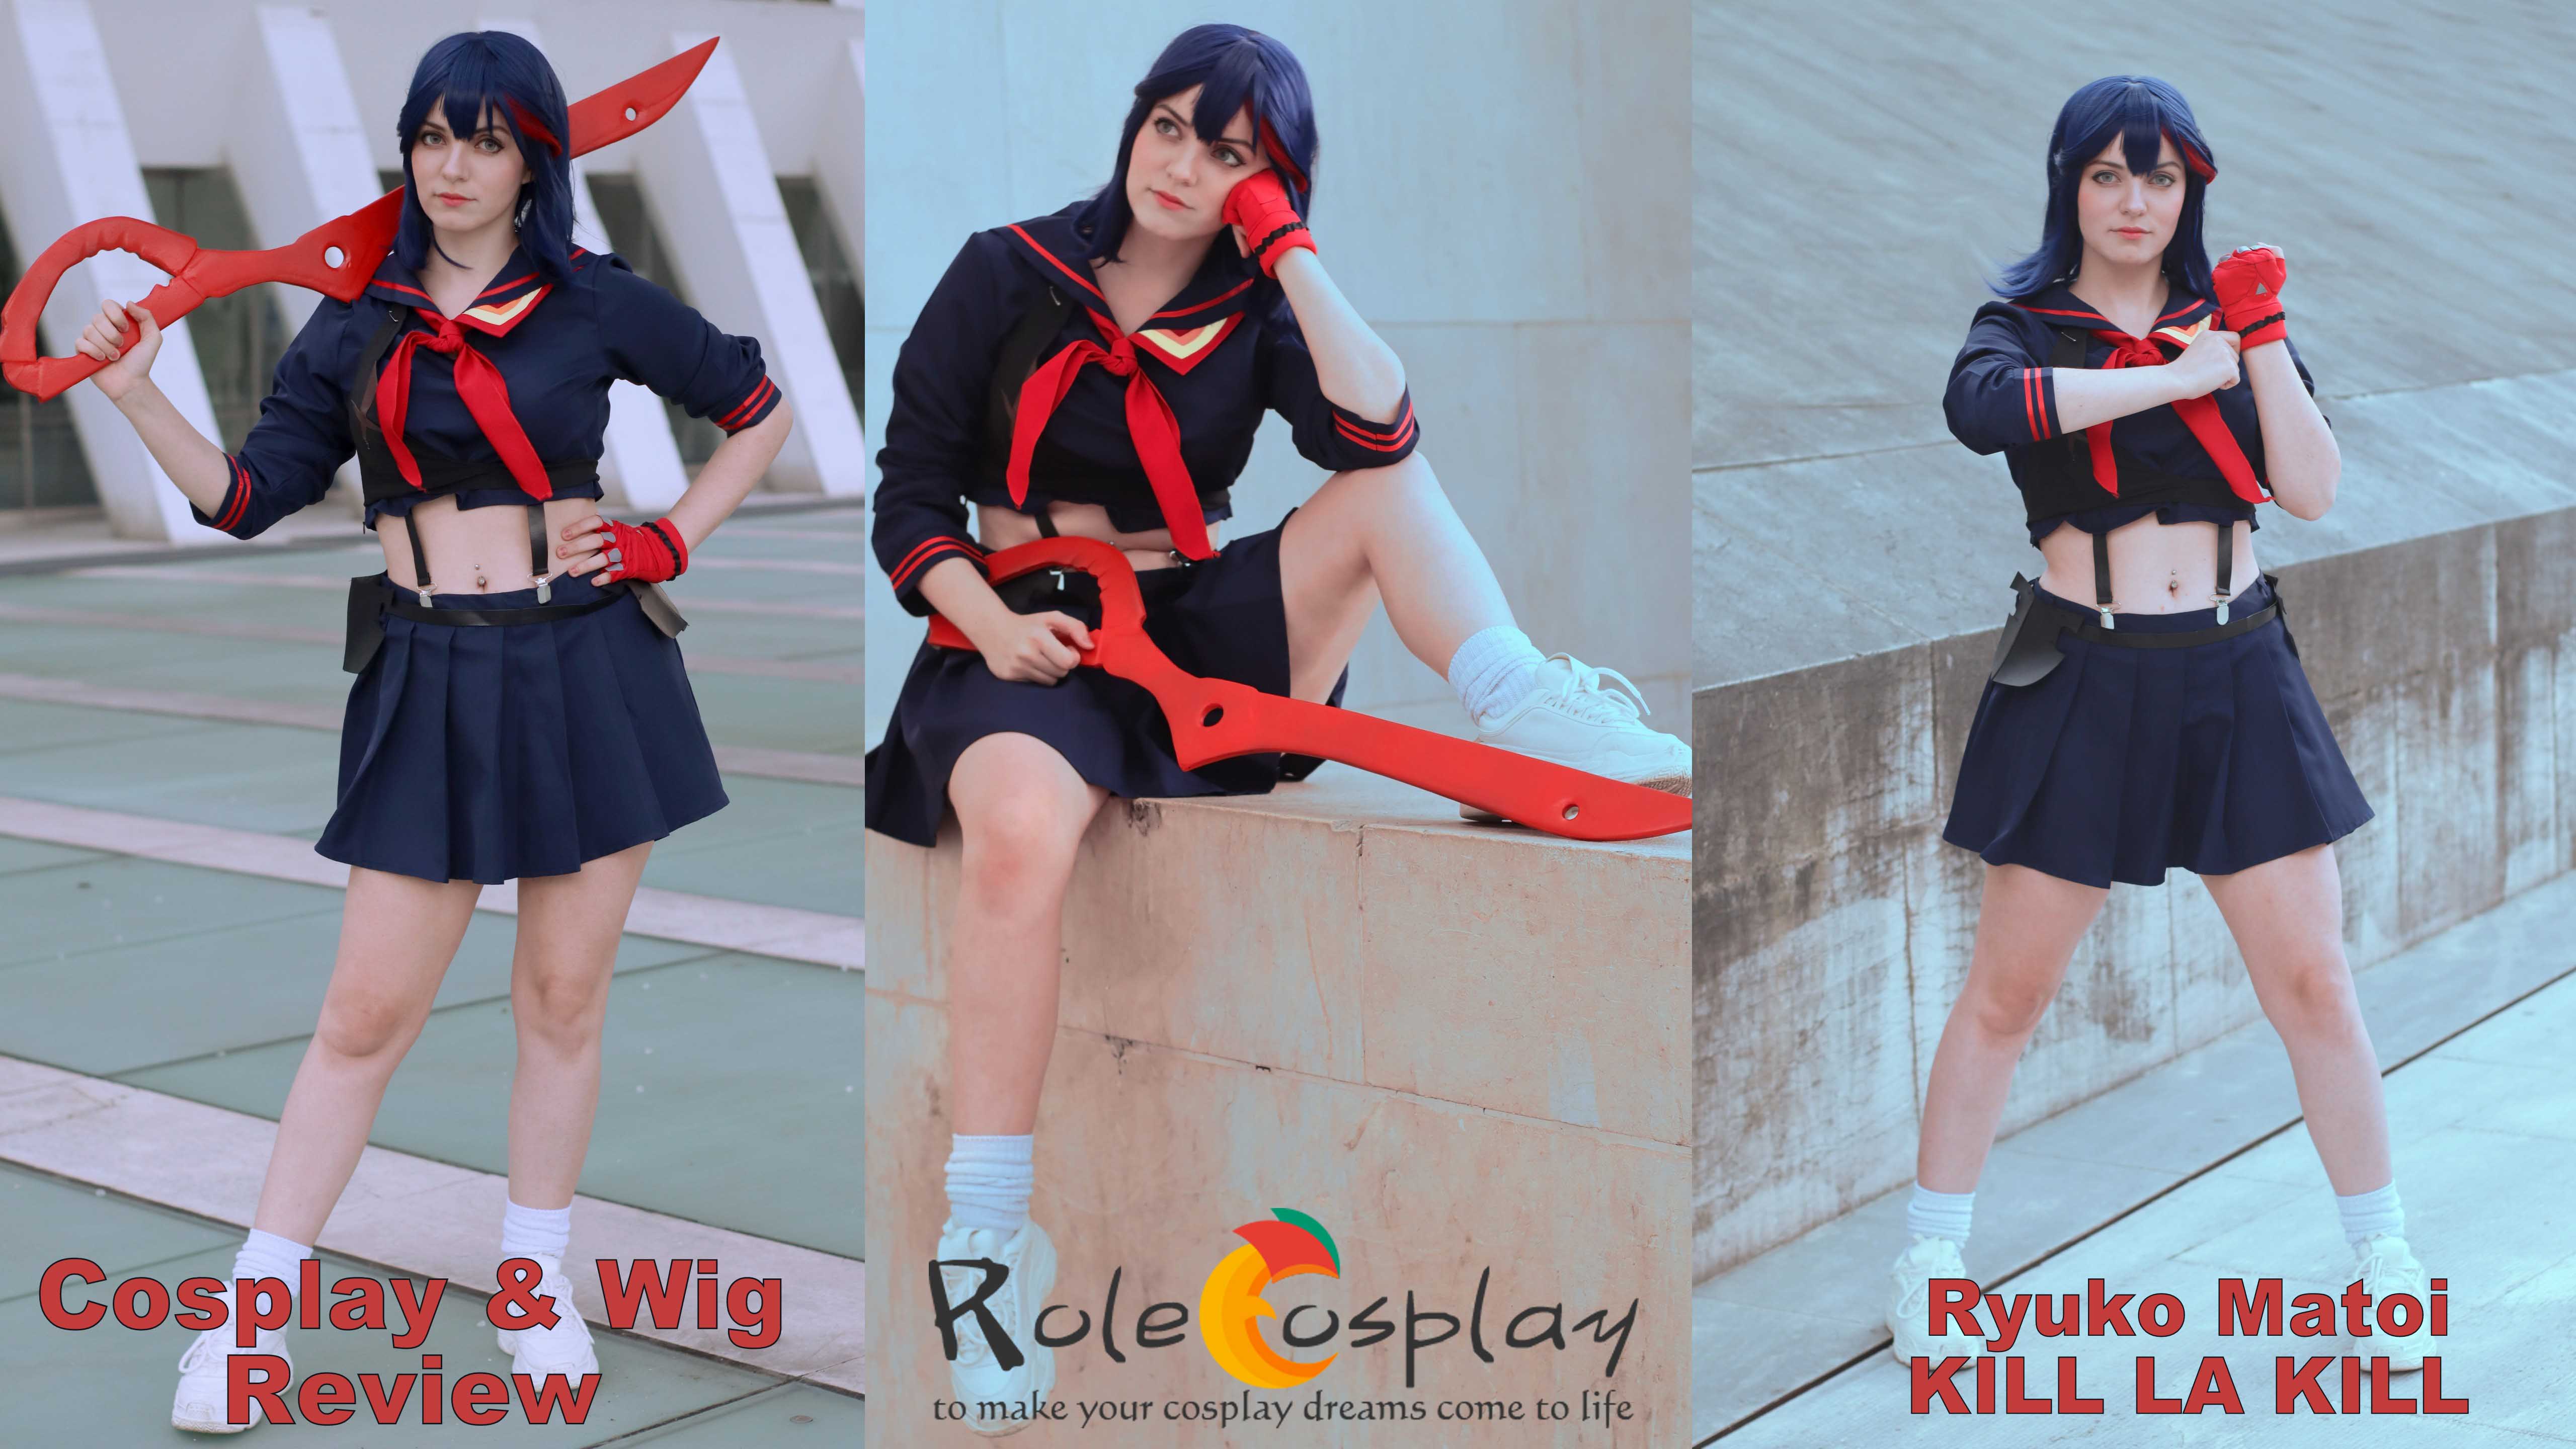 Cosplay & Wig review: Ryuko Matoi (Kill la Kill) from Rolecosplay